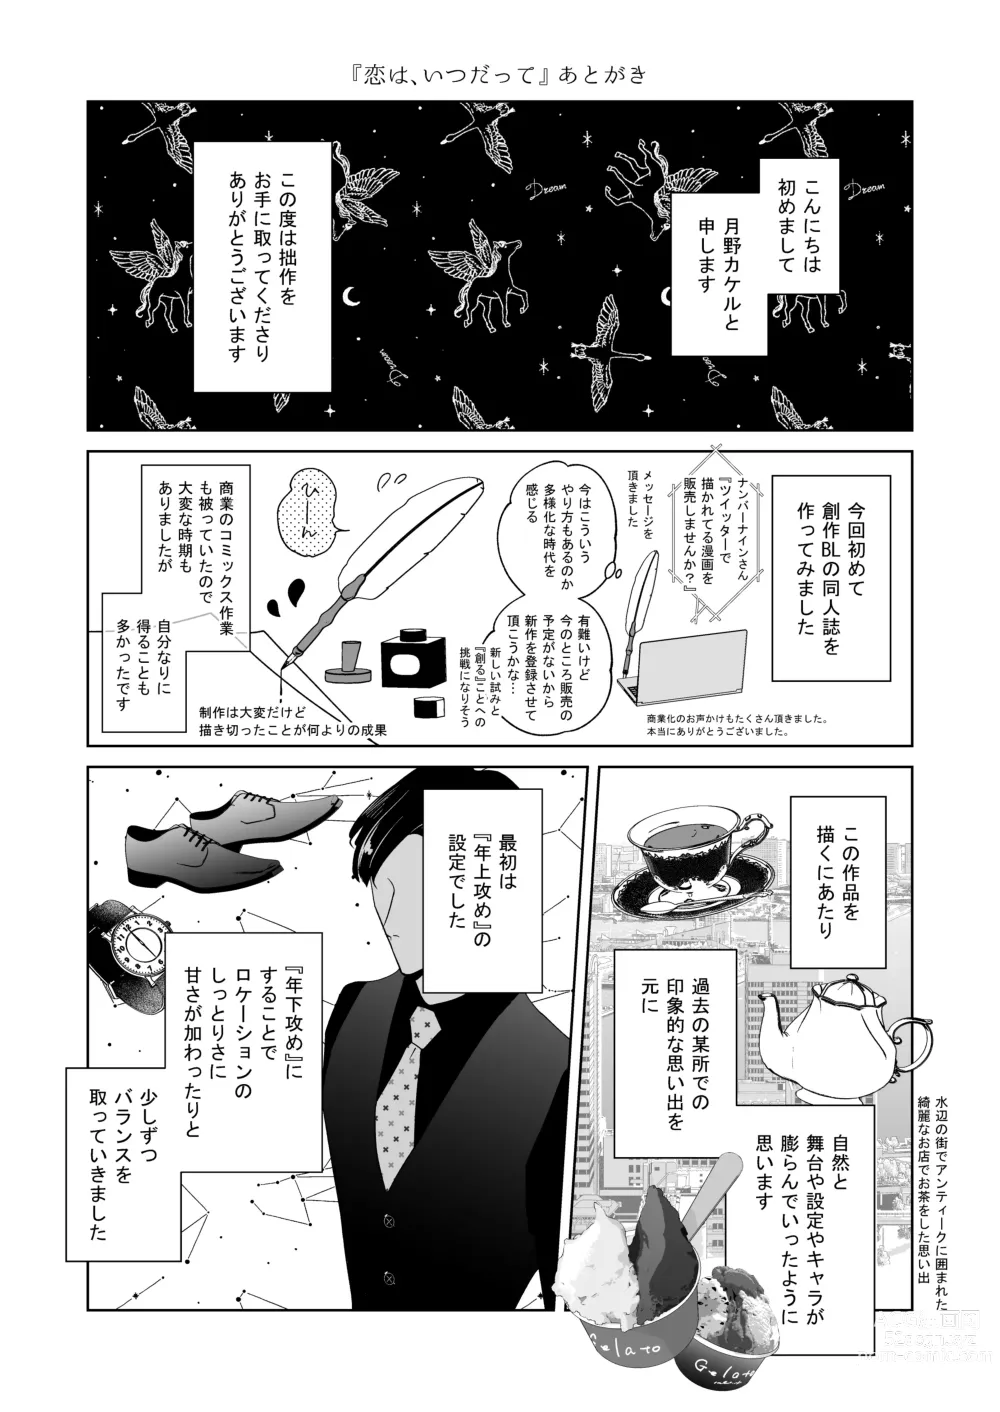 Page 57 of doujinshi Koi wa, Itsu datte